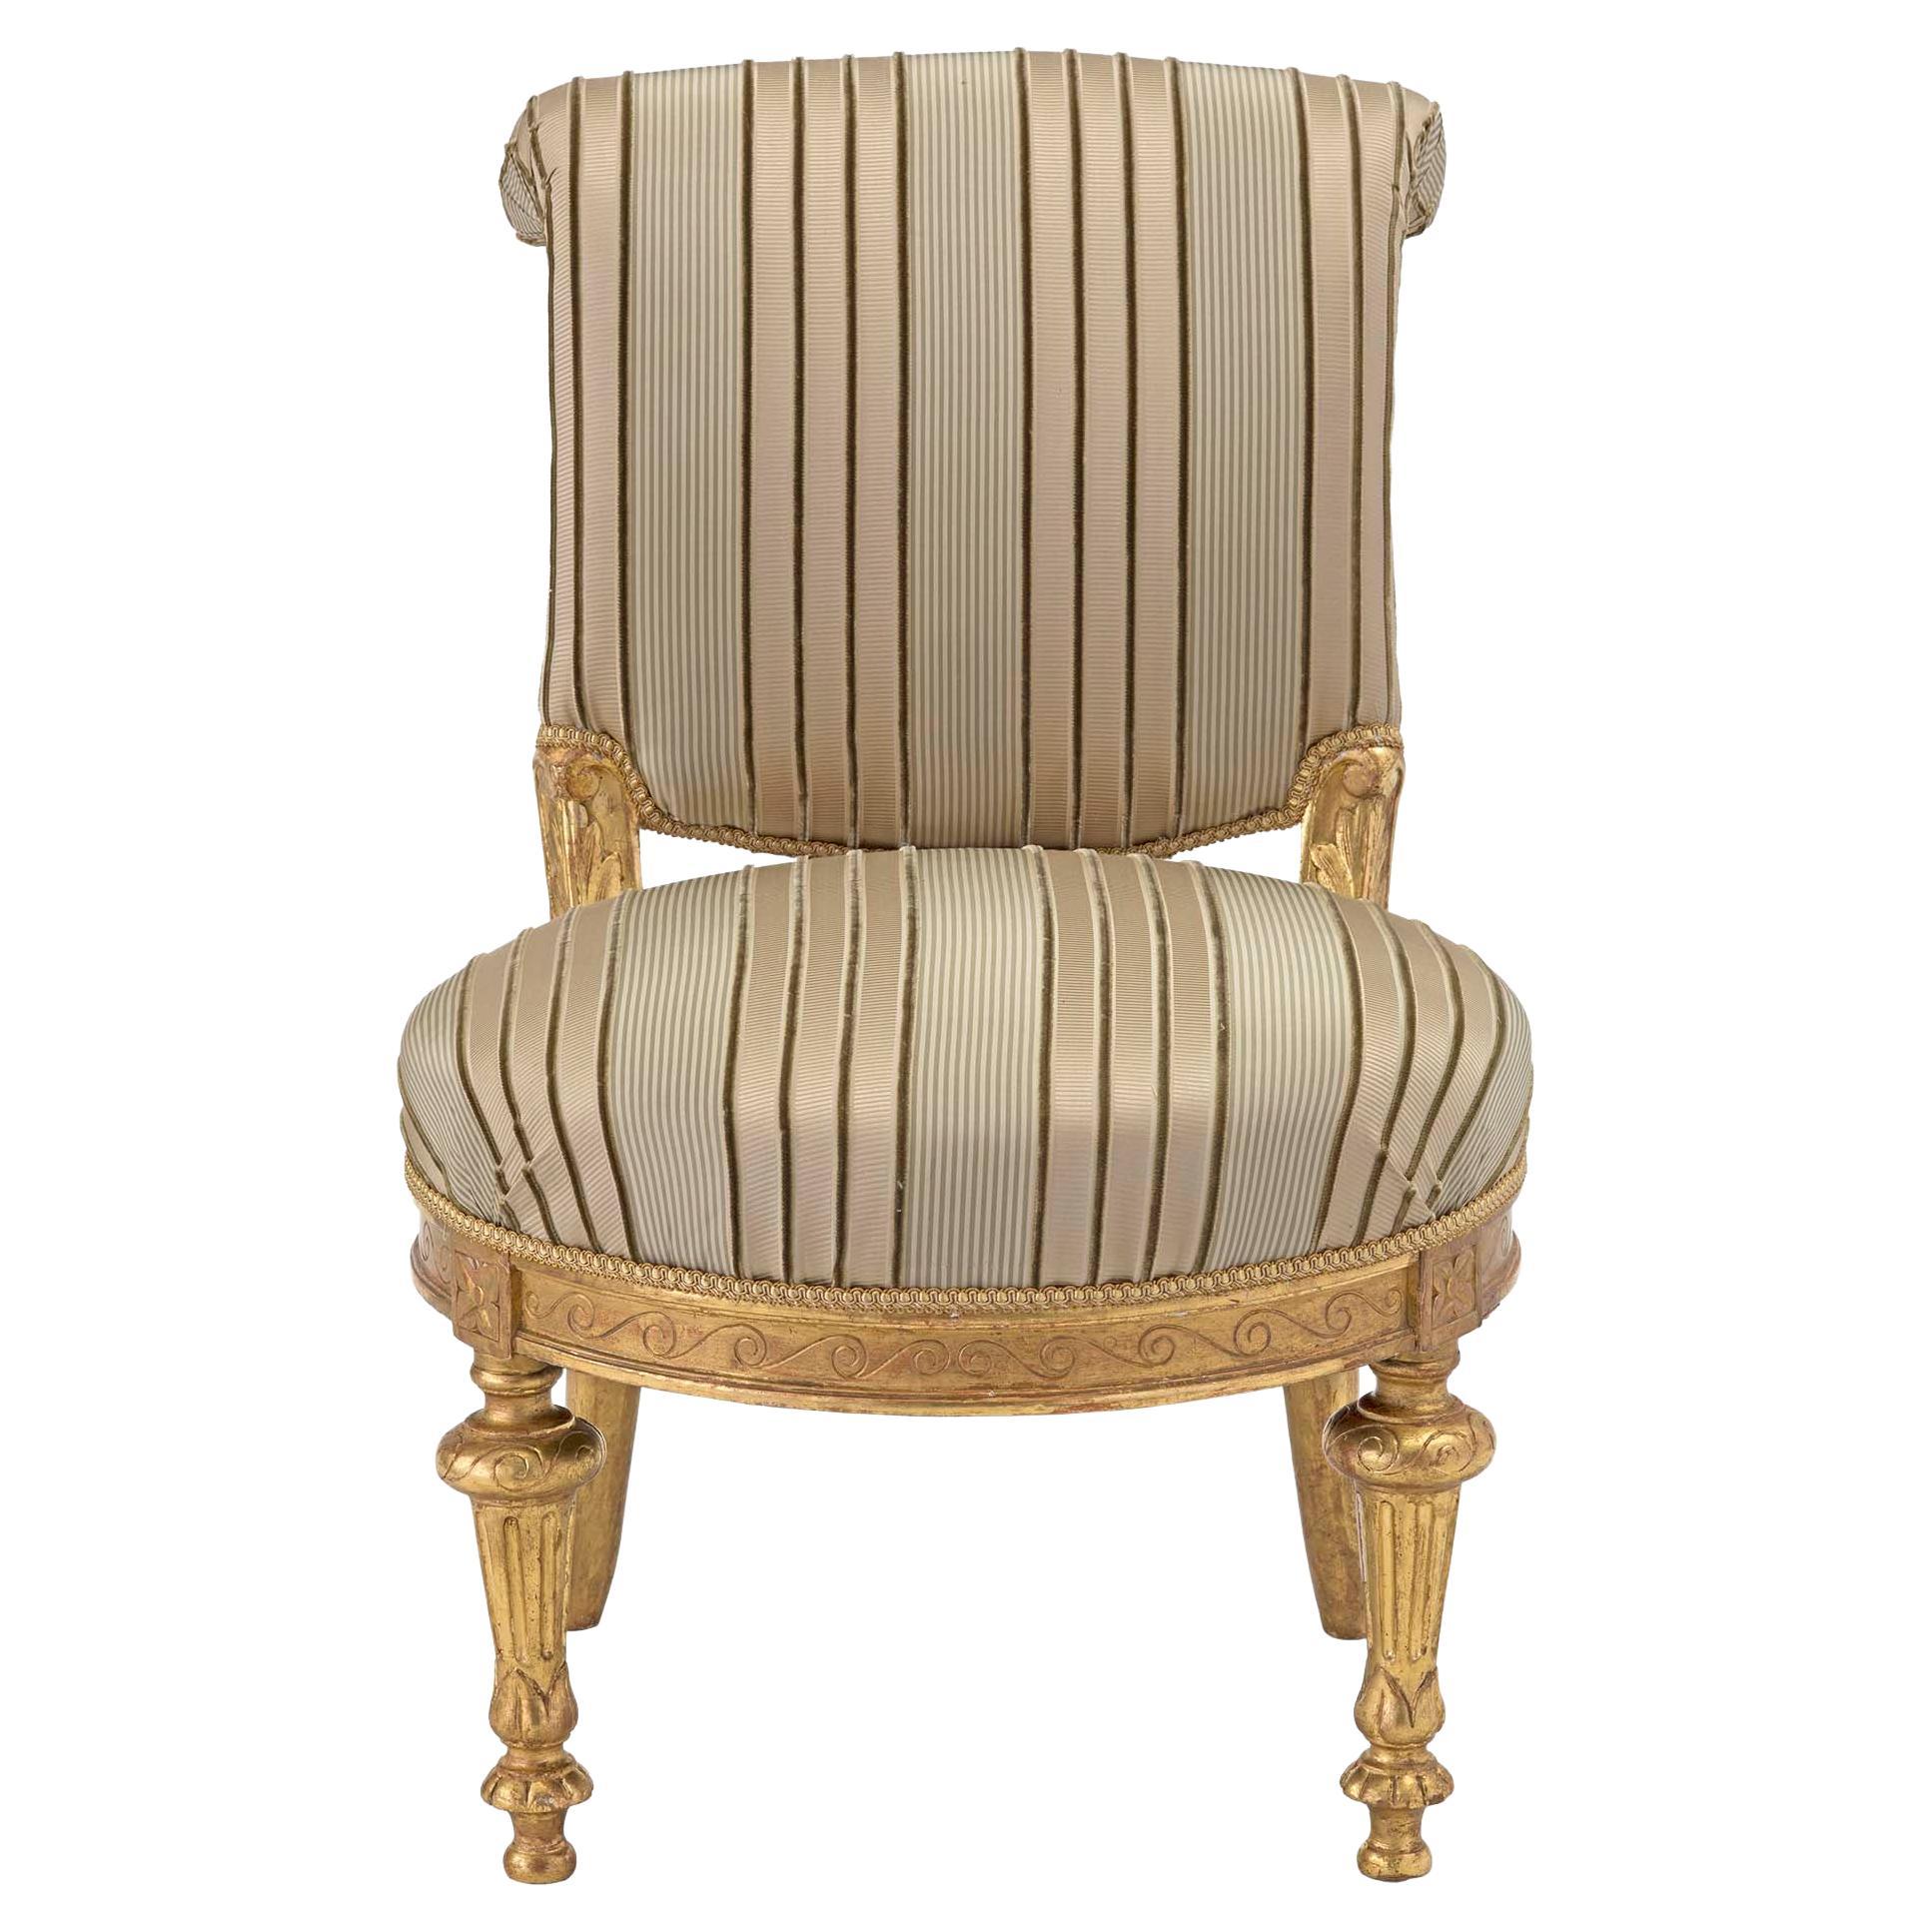 Italienischer Sessel aus vergoldetem Holz im Louis-XVI-Stil des frühen 19. Jahrhunderts